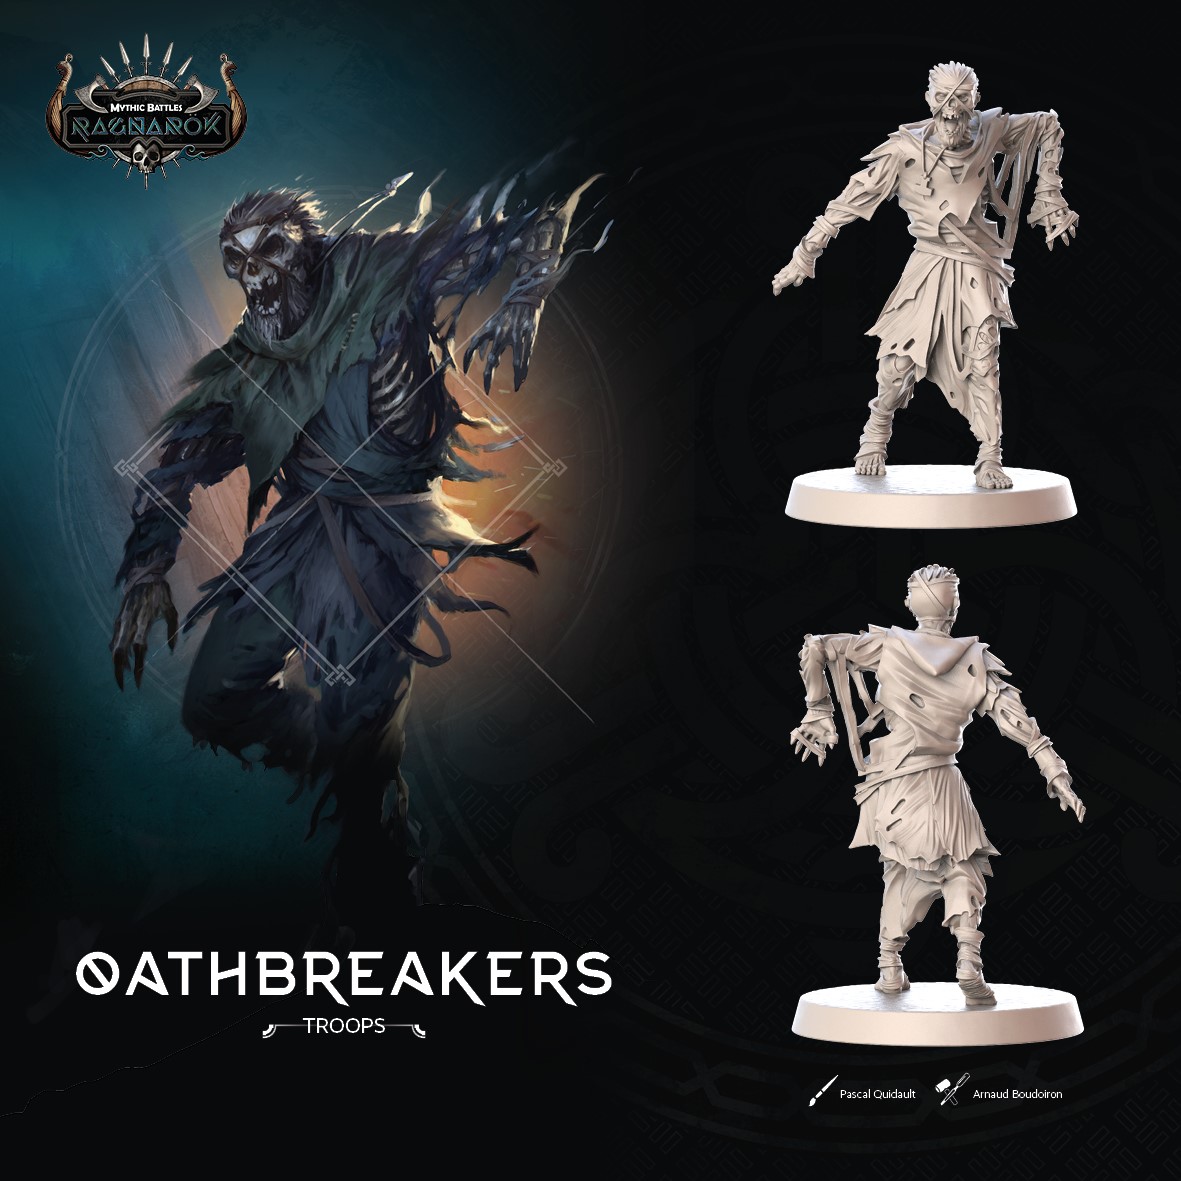 Oathbreaker Art - Monolith